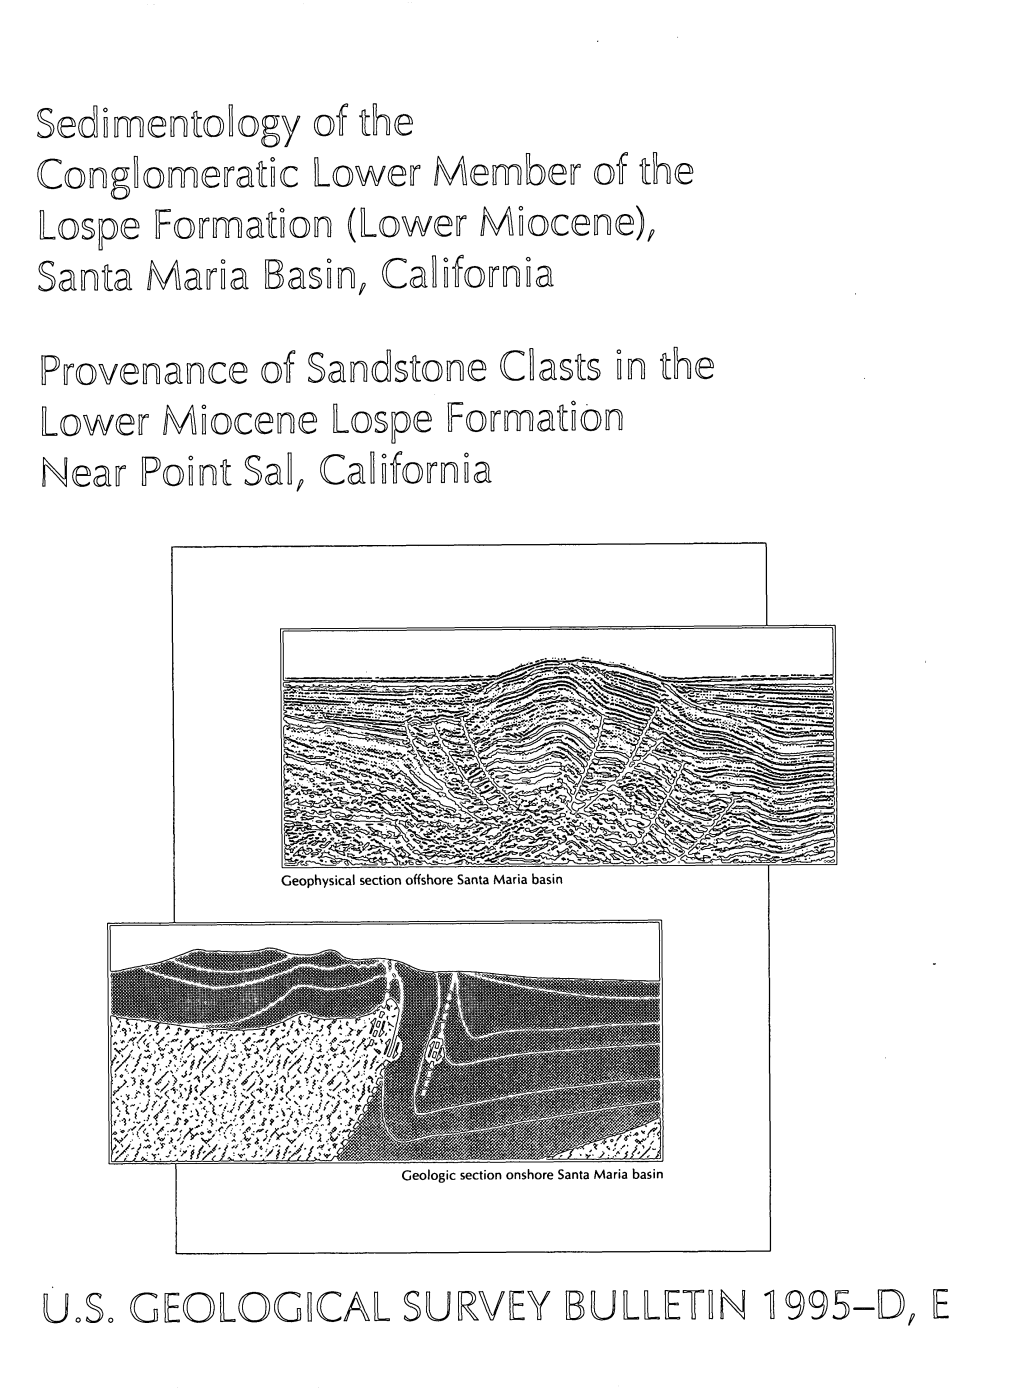 Lower Miocene Lo